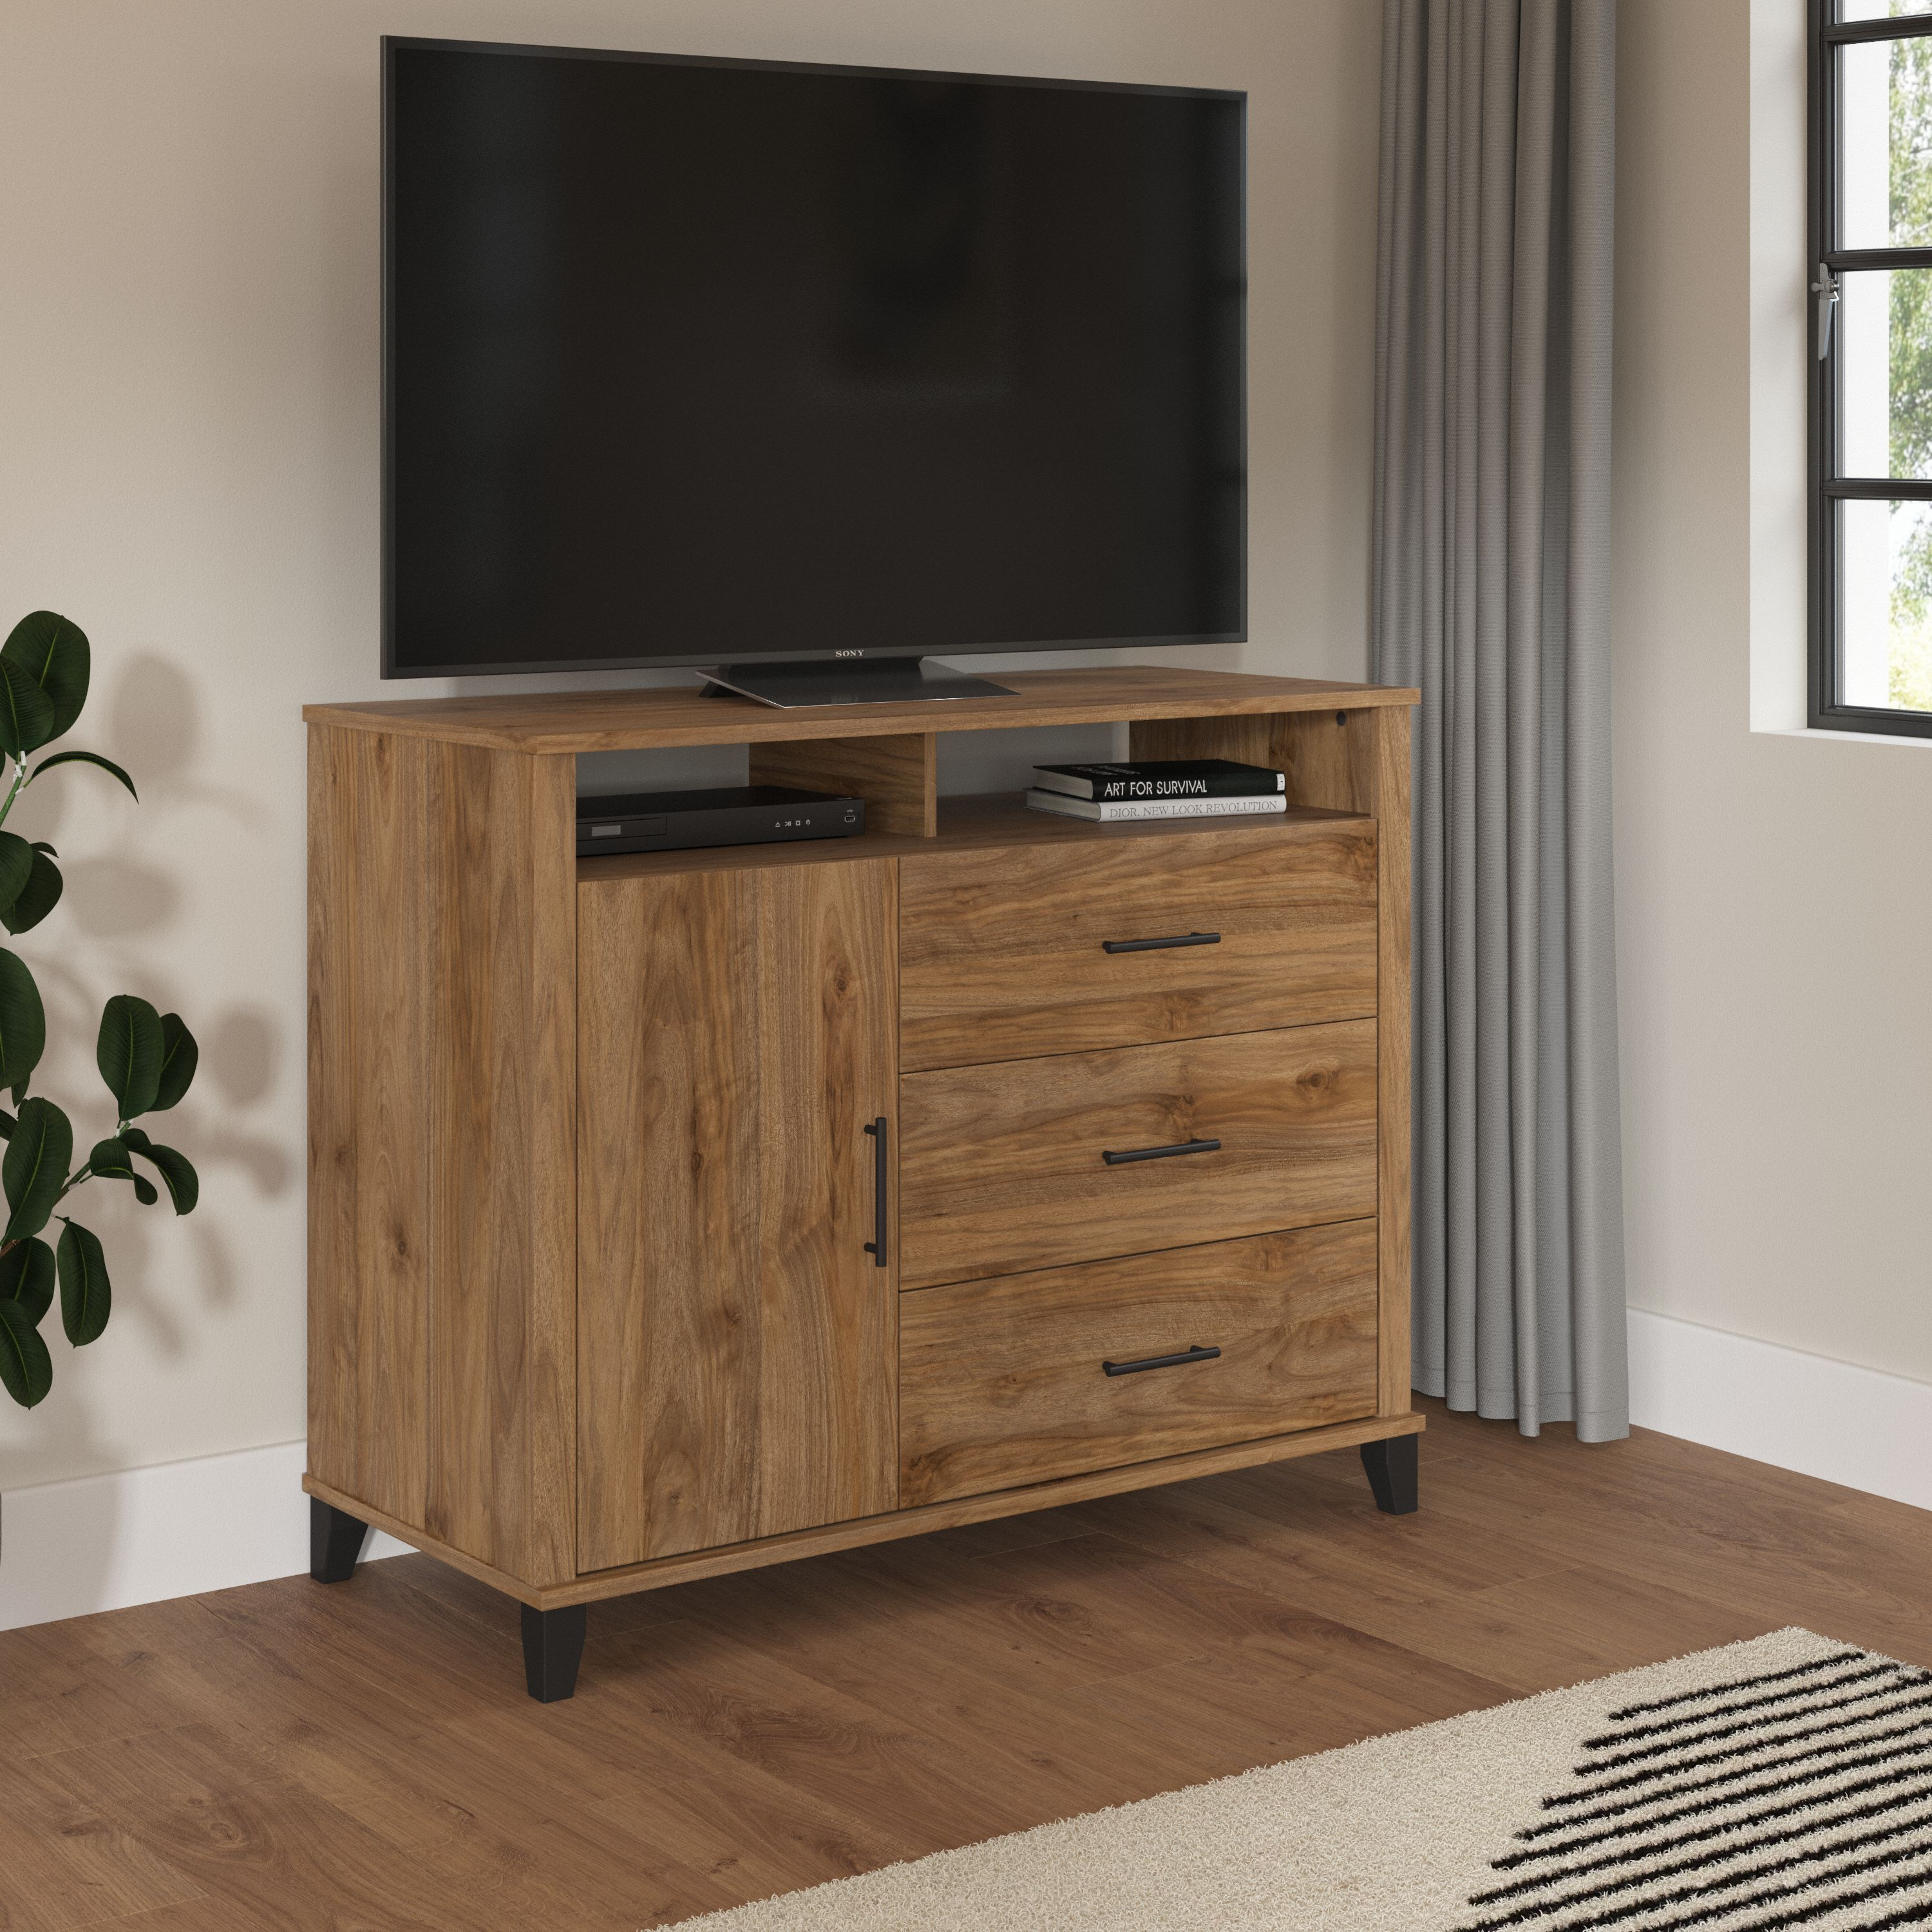 Shop Bush Furniture Somerset 3 Drawer Dresser and Bedroom TV Stand 01 STV148FWK #color_fresh walnut